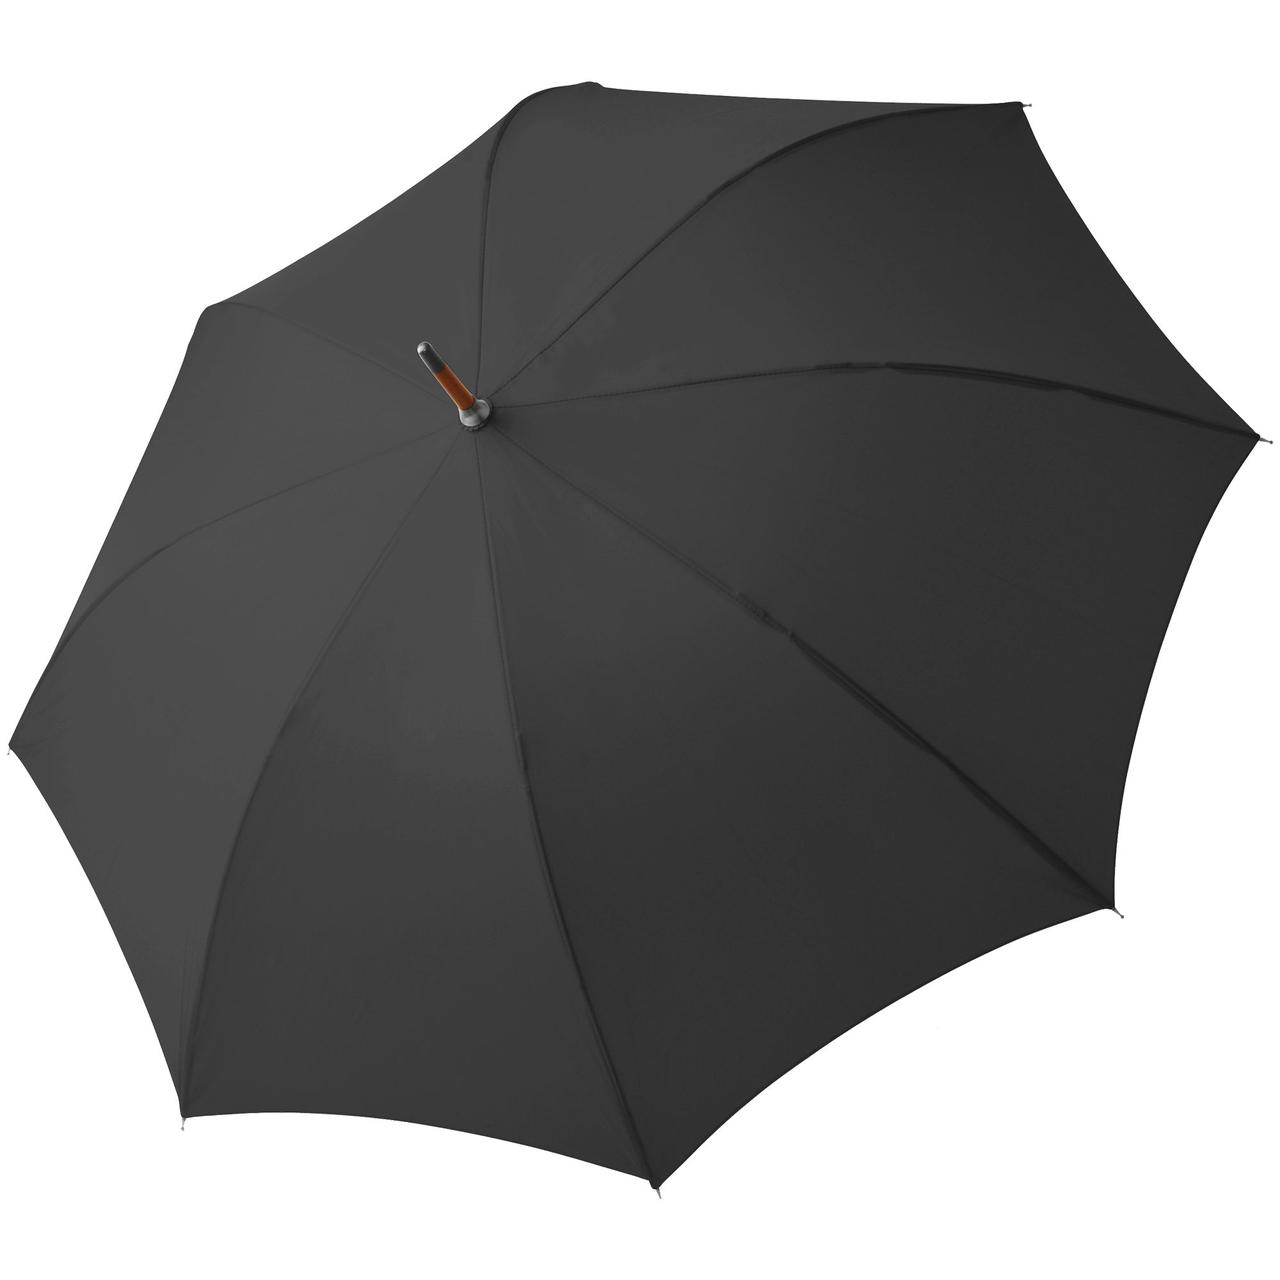 Зонт-трость Oslo AC, черный (артикул 11847.30), фото 1